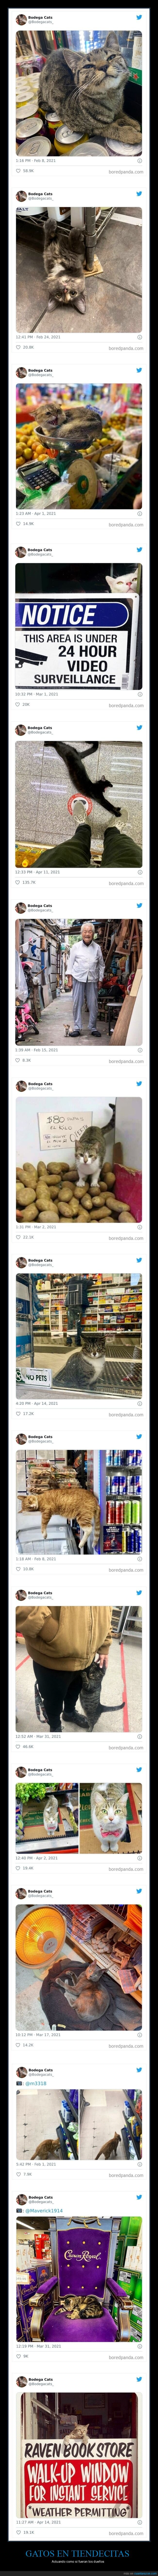 gatos,tiendas,dueños